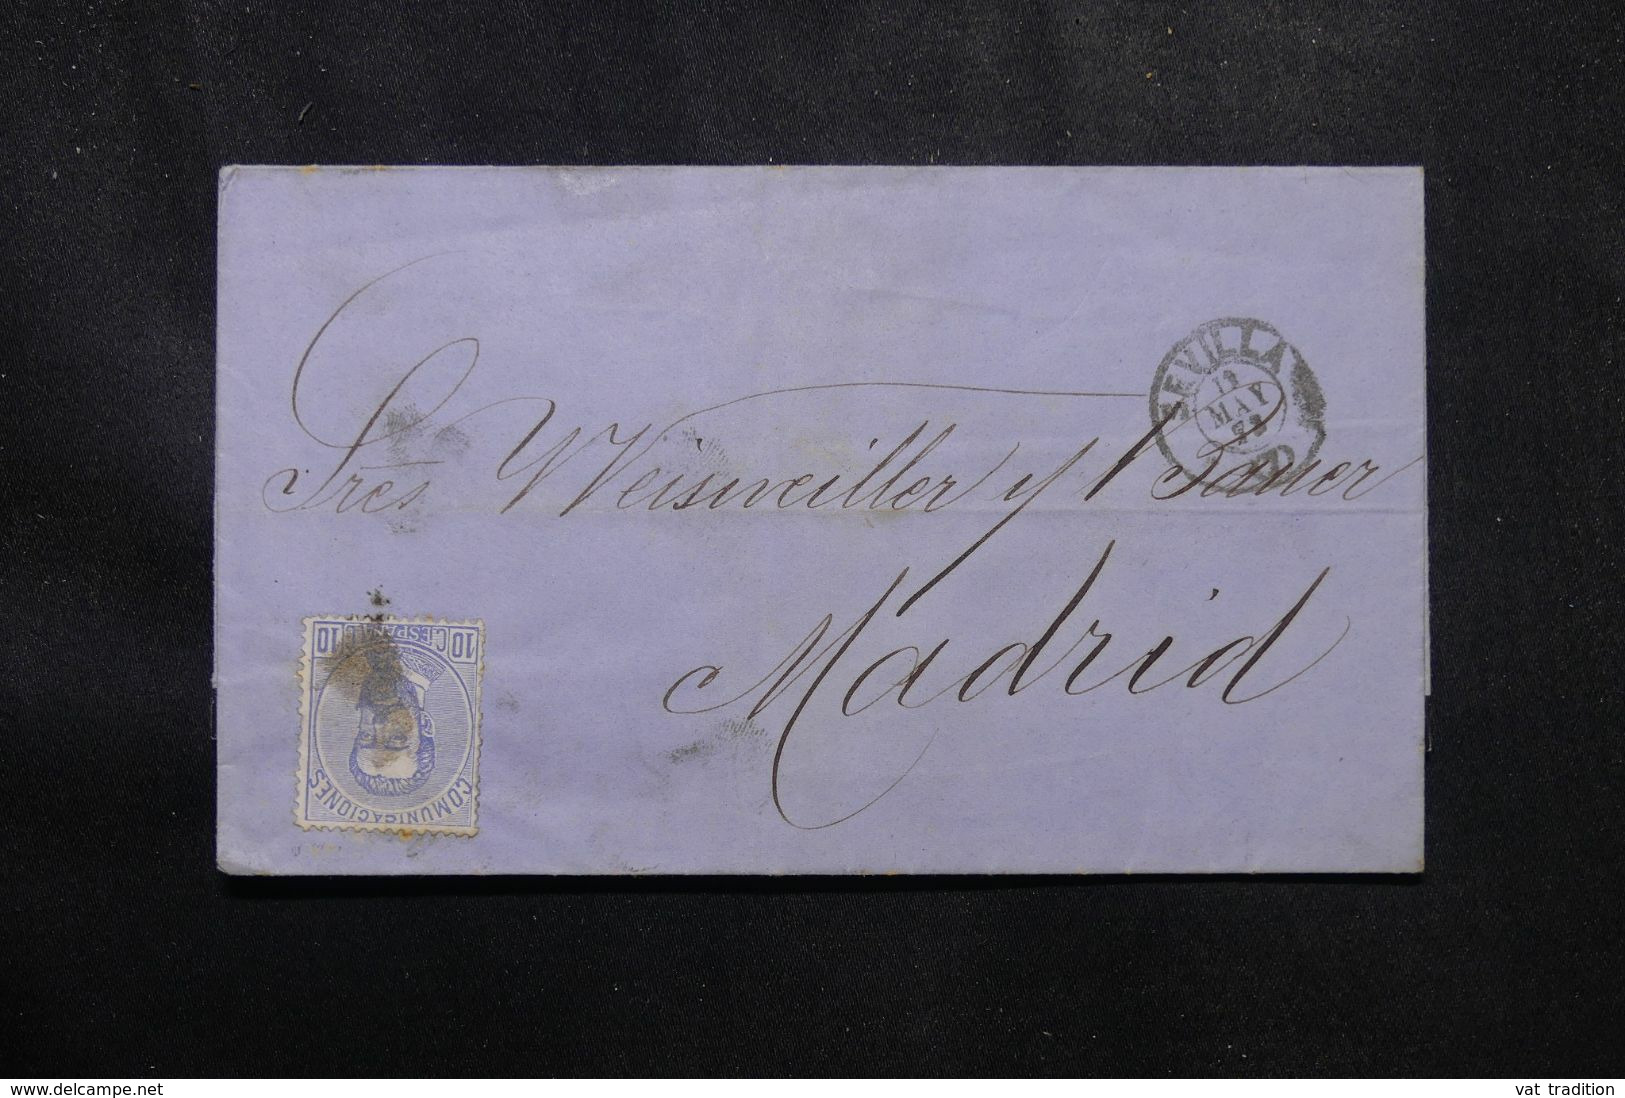 ESPAGNE - Lettre De Sevilla Pour Madrid En 1872 , Affranchissement Amédée 1er - L 70060 - Lettres & Documents